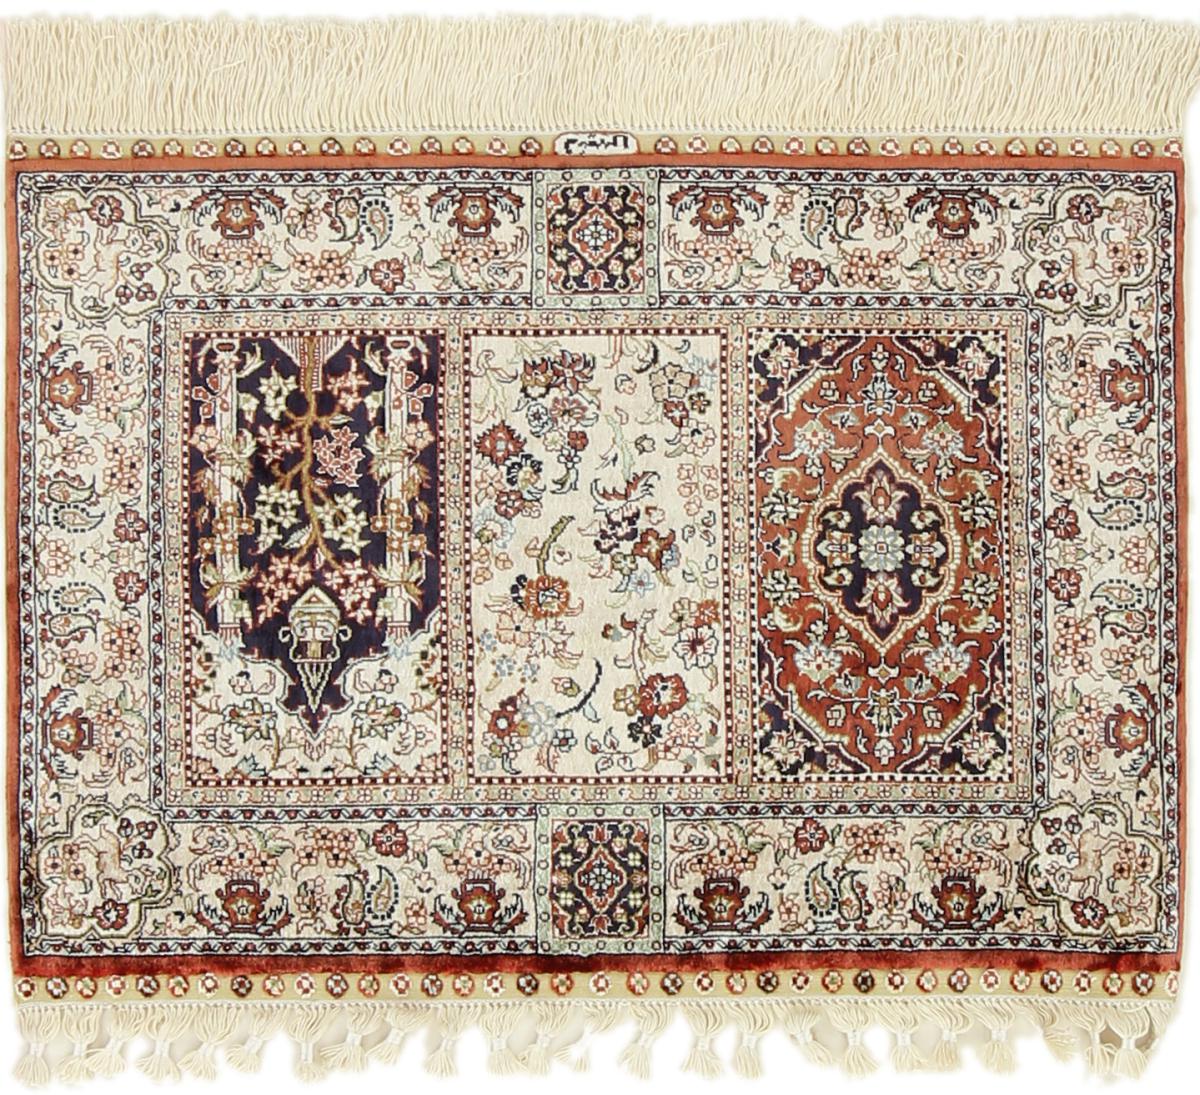 Chinees tapijt Hereke Zijde 1'6"x2'1" 1'6"x2'1", Perzisch tapijt Handgeknoopte